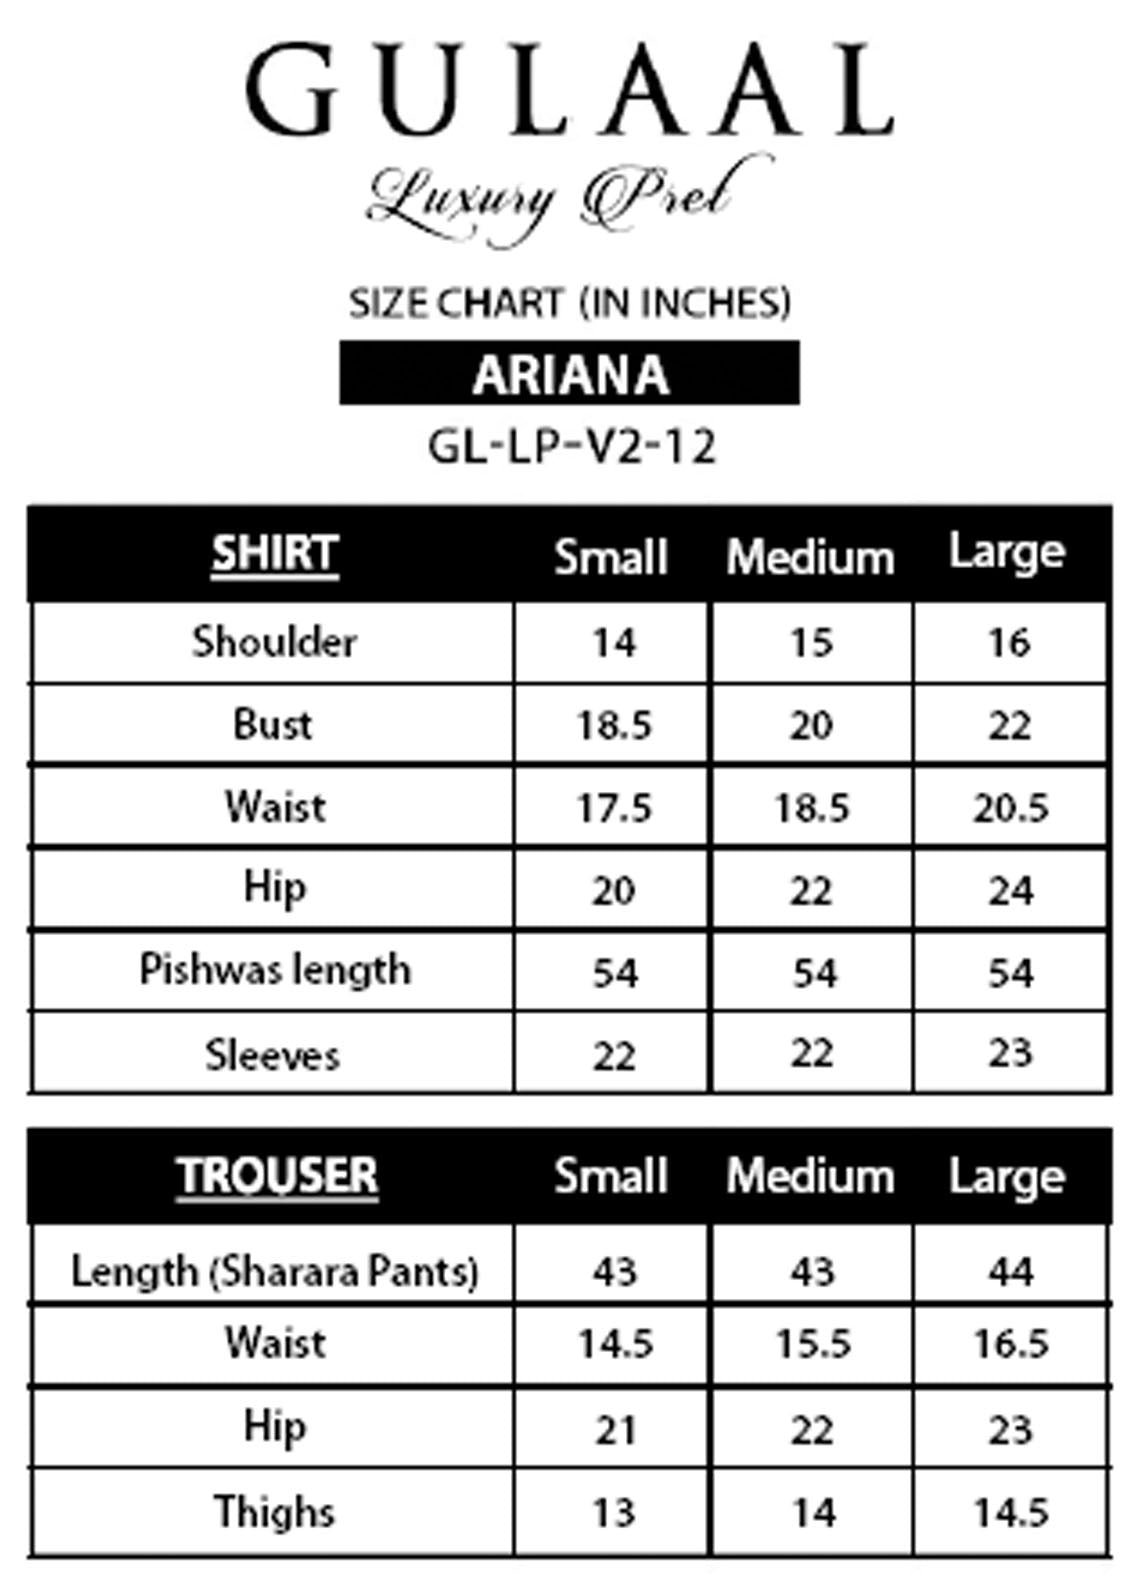 Gulaal Pret Luxury Organza 4 Piece Suit GL-LP-V2-12 Ariana